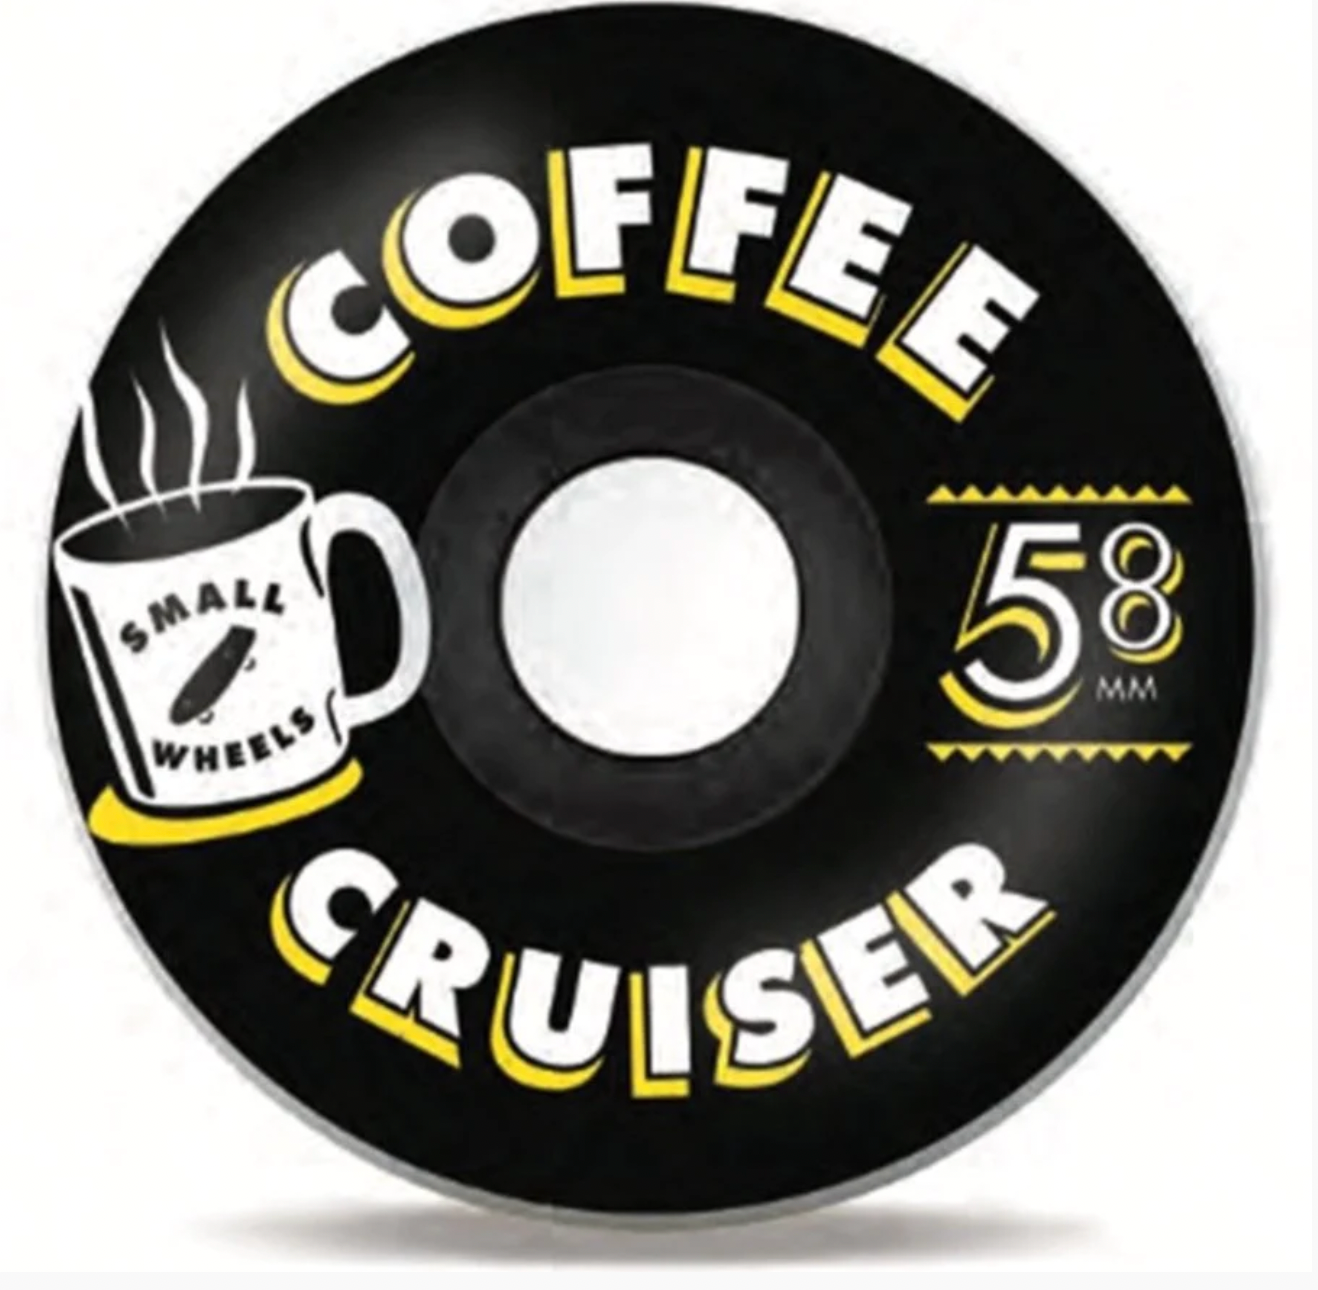 SML - Coffee Cruiser 58mm 78a